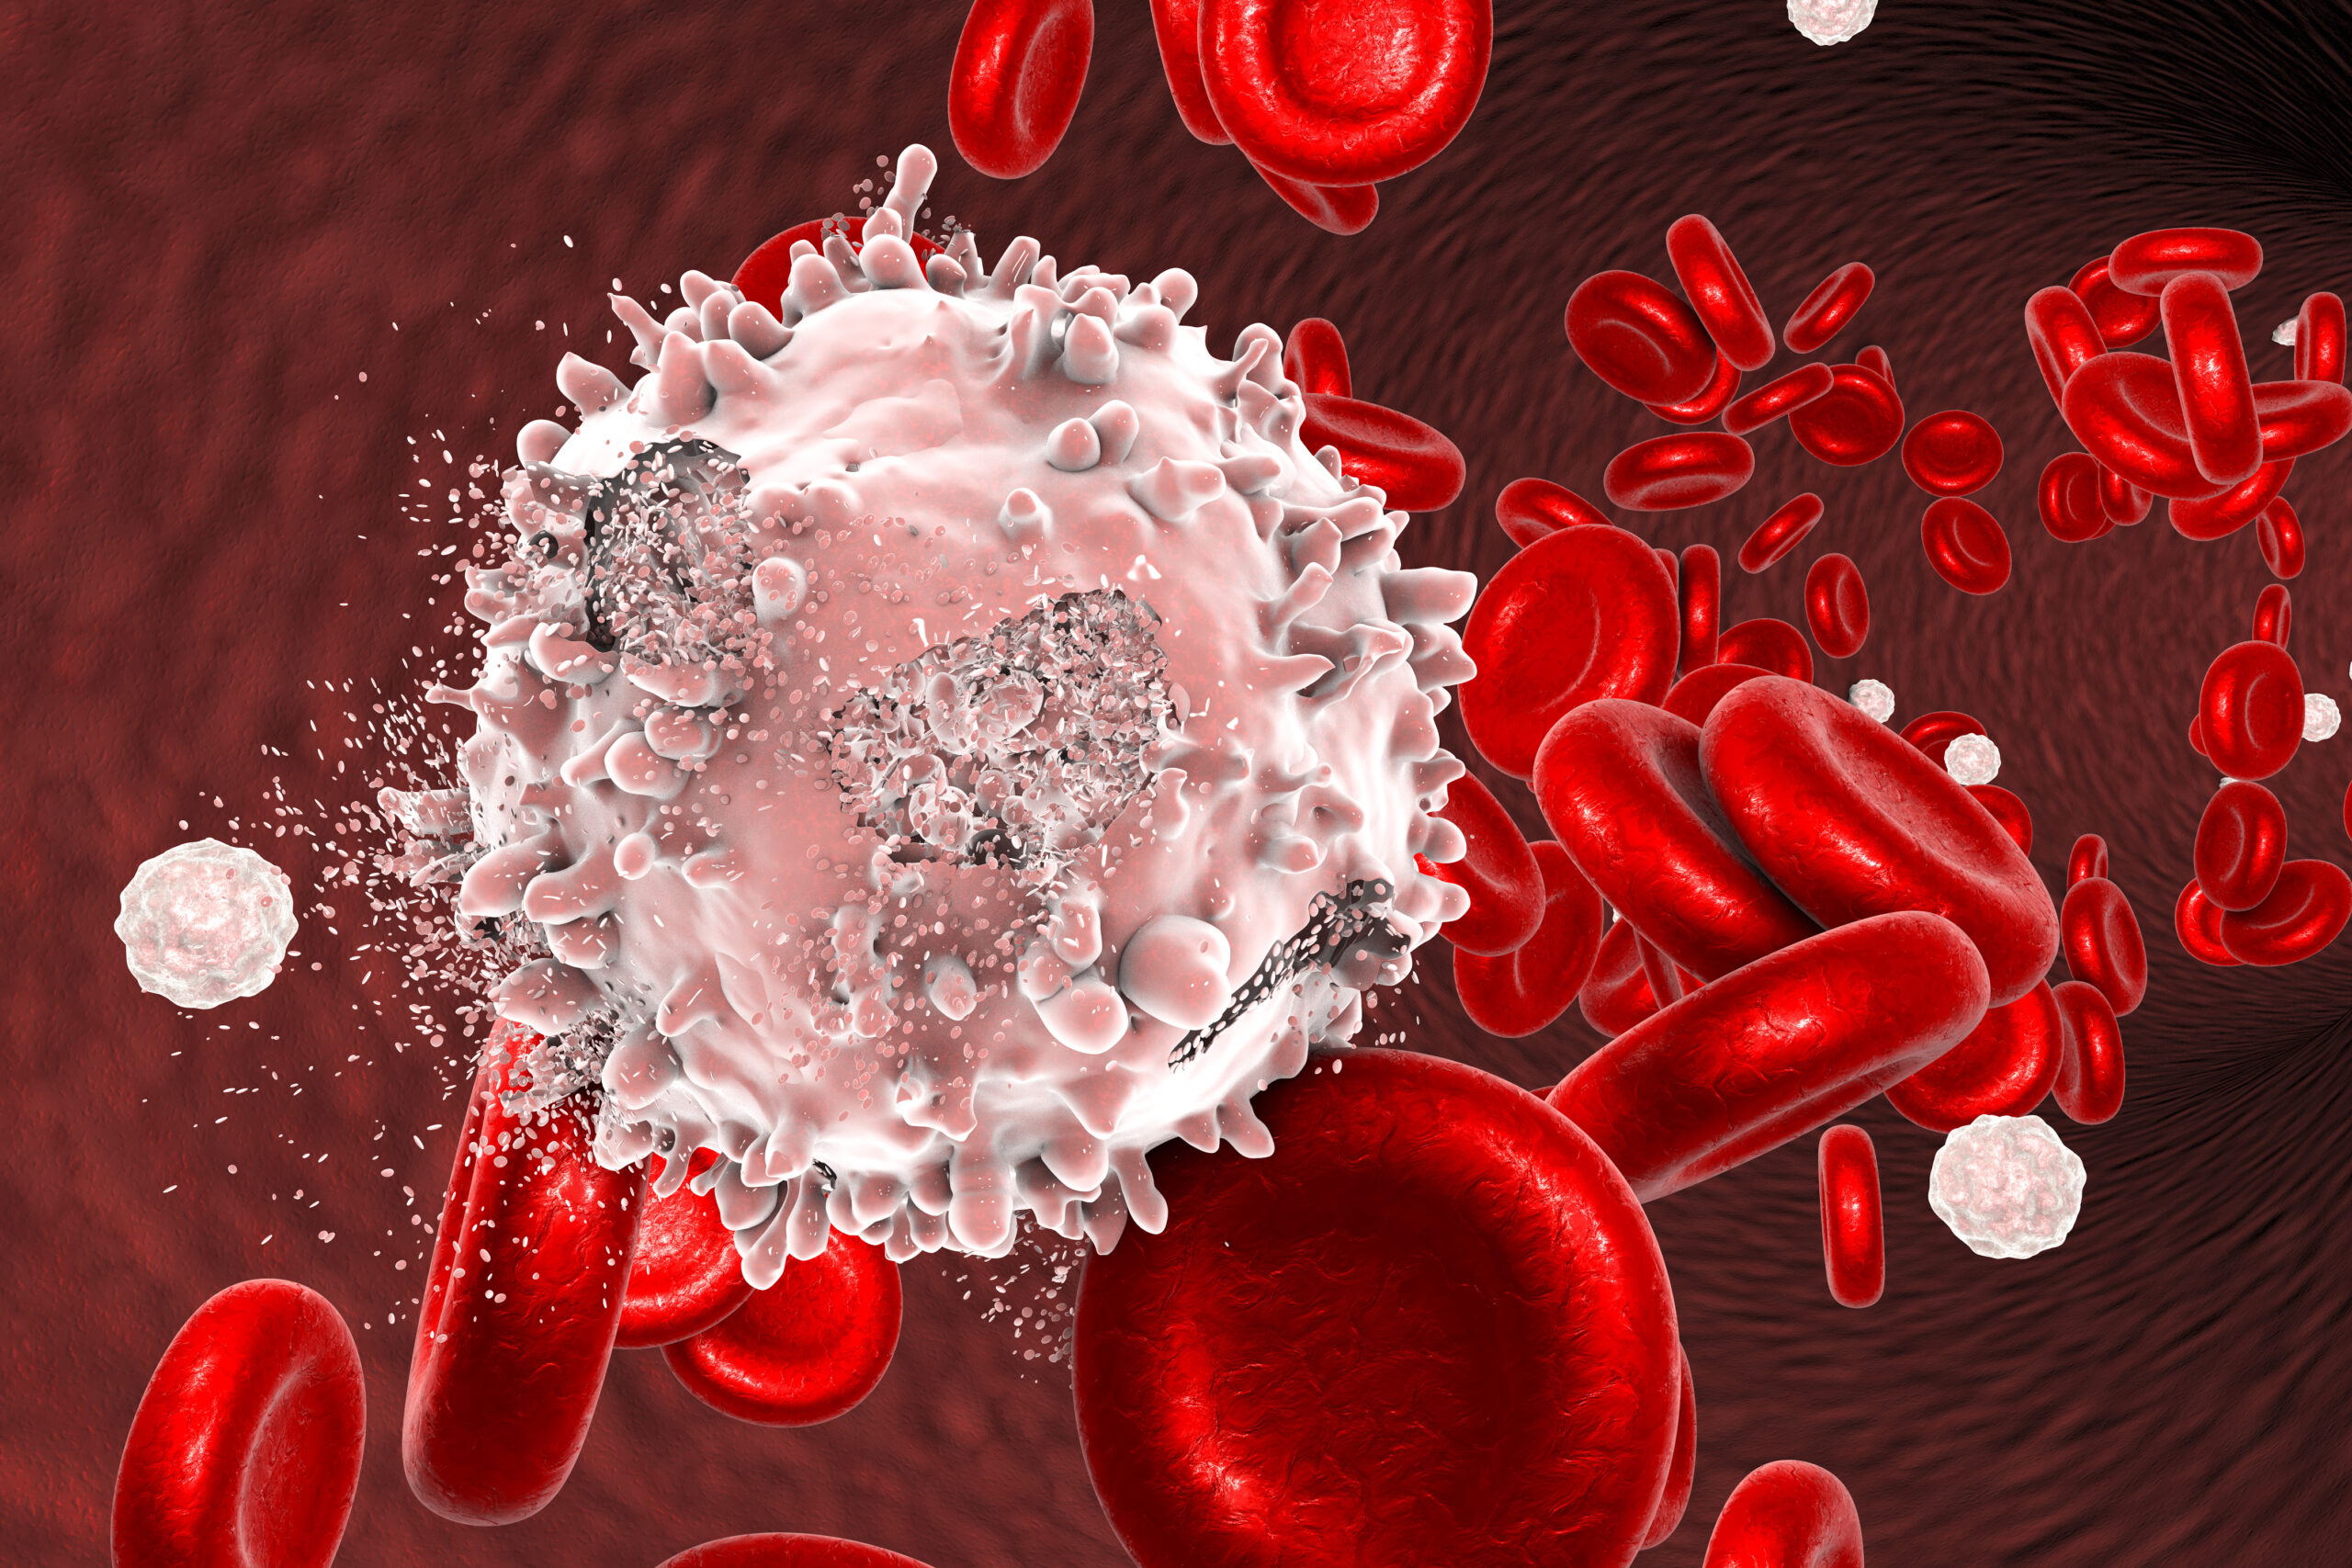 Zniszczenie komórki białaczki, obraz koncepcyjny. Ilustracja 3D, która może być wykorzystana do zilustrowania leczenia raka krwi